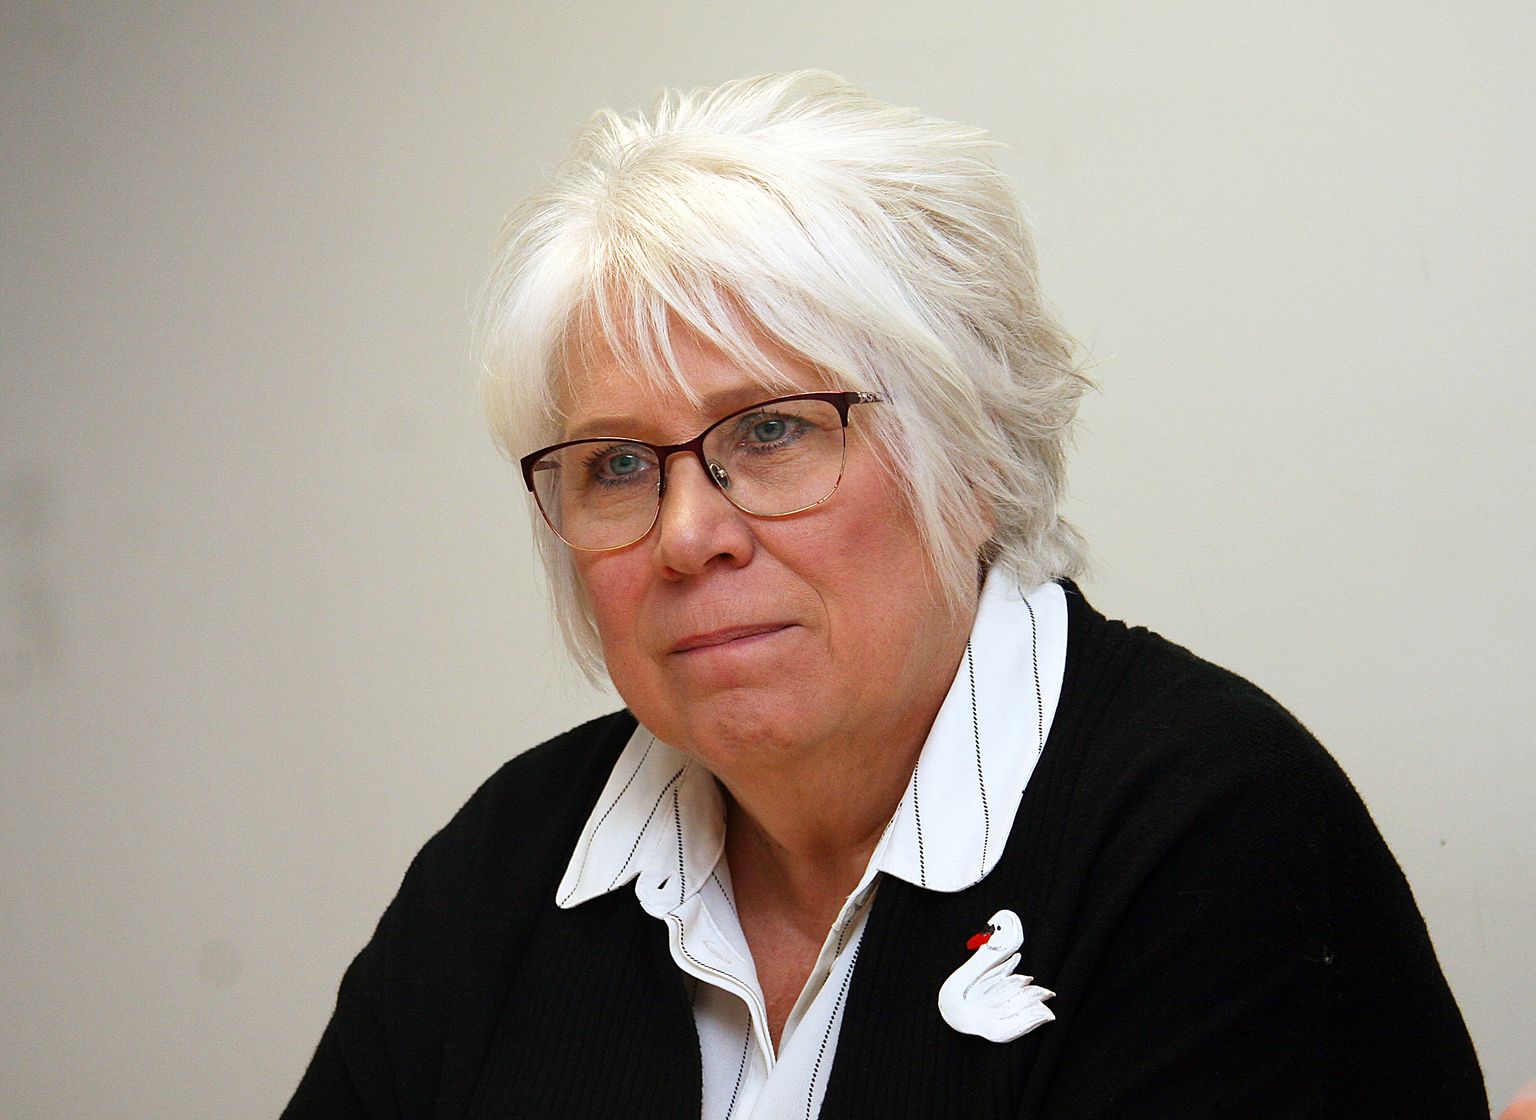 Марина Кальюранд, евродепутат, глава МИД Эстонии в 2015-2016 году.